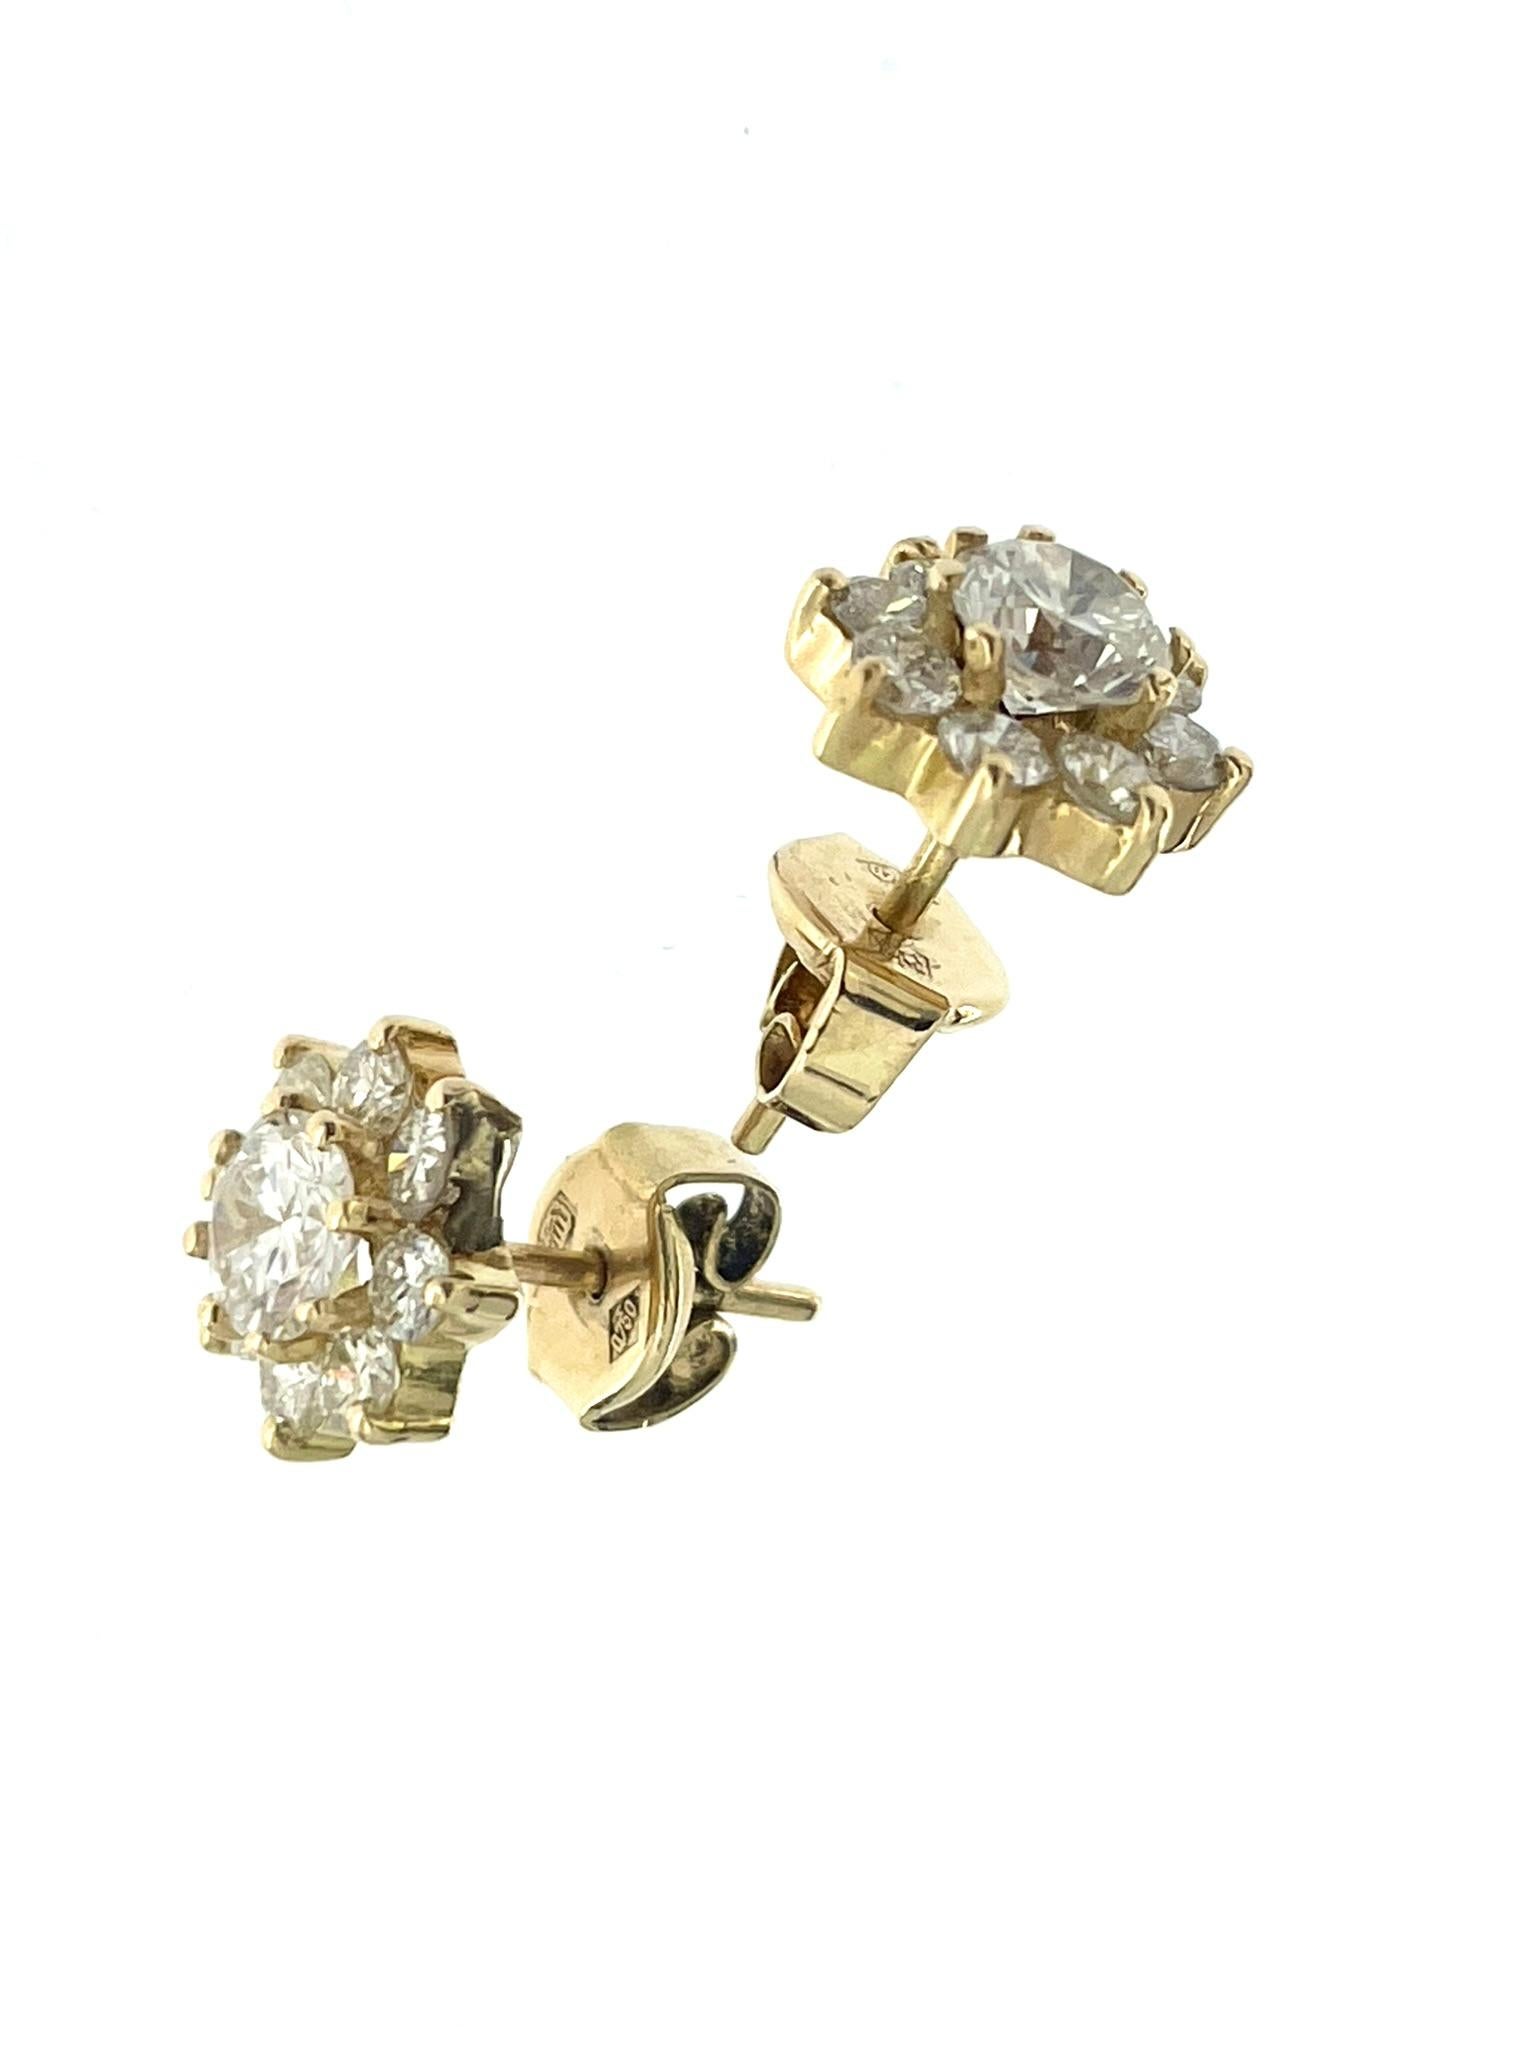 HRD Certified Yellow Gold Diamond Flower Earrings For Sale 4